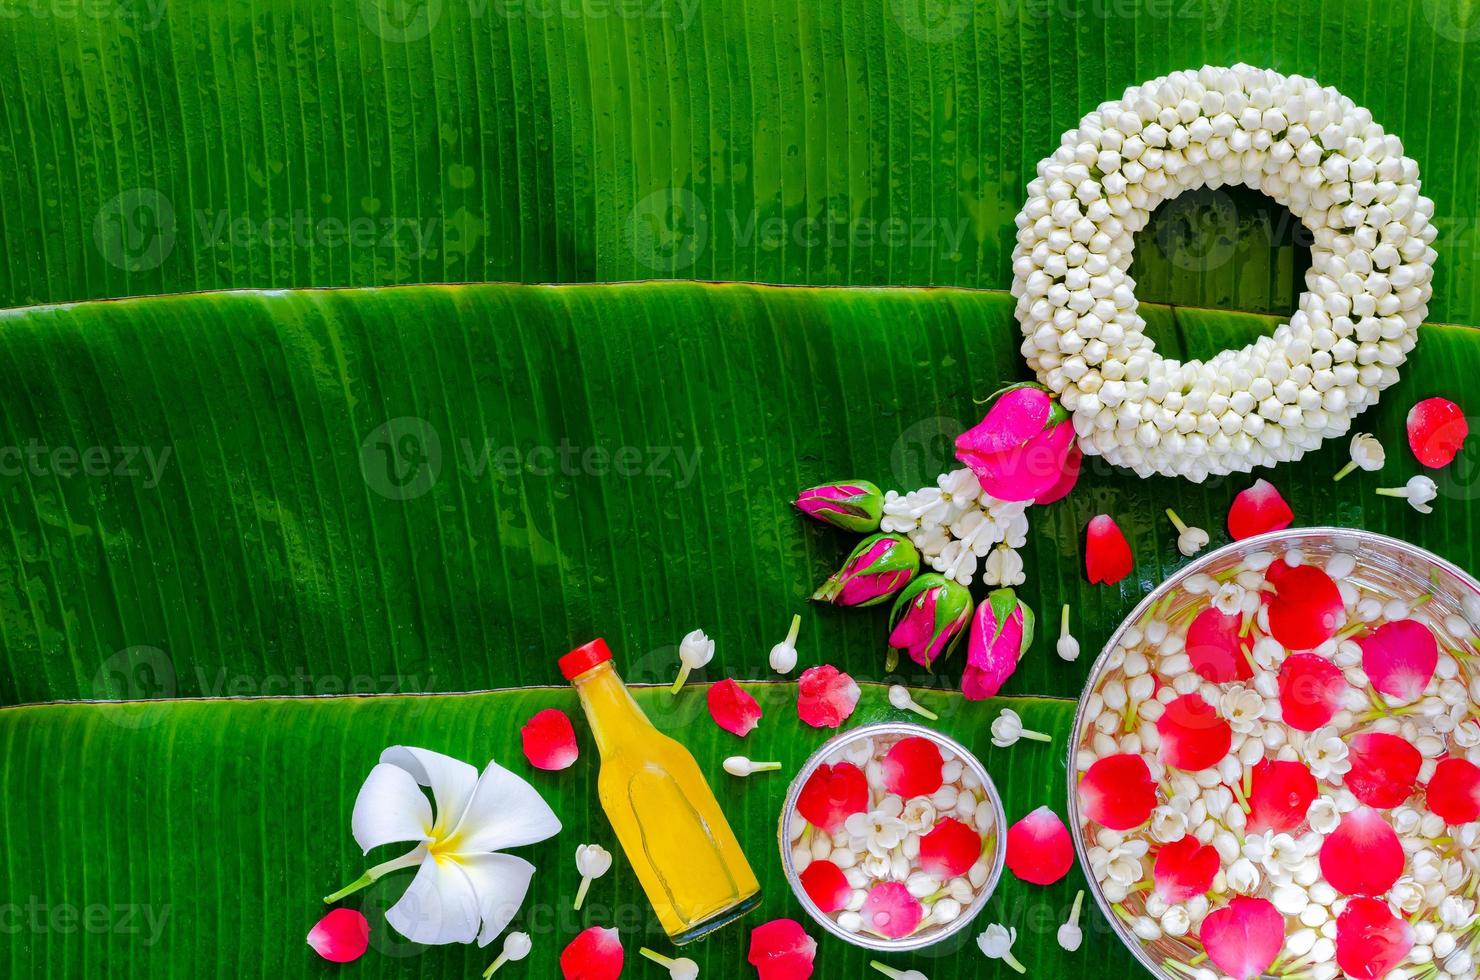 Fondo del festival Songkran con guirnaldas de jazmín, flores en tazones de agua y agua perfumada para bendecir el fondo húmedo de hojas de plátano. foto